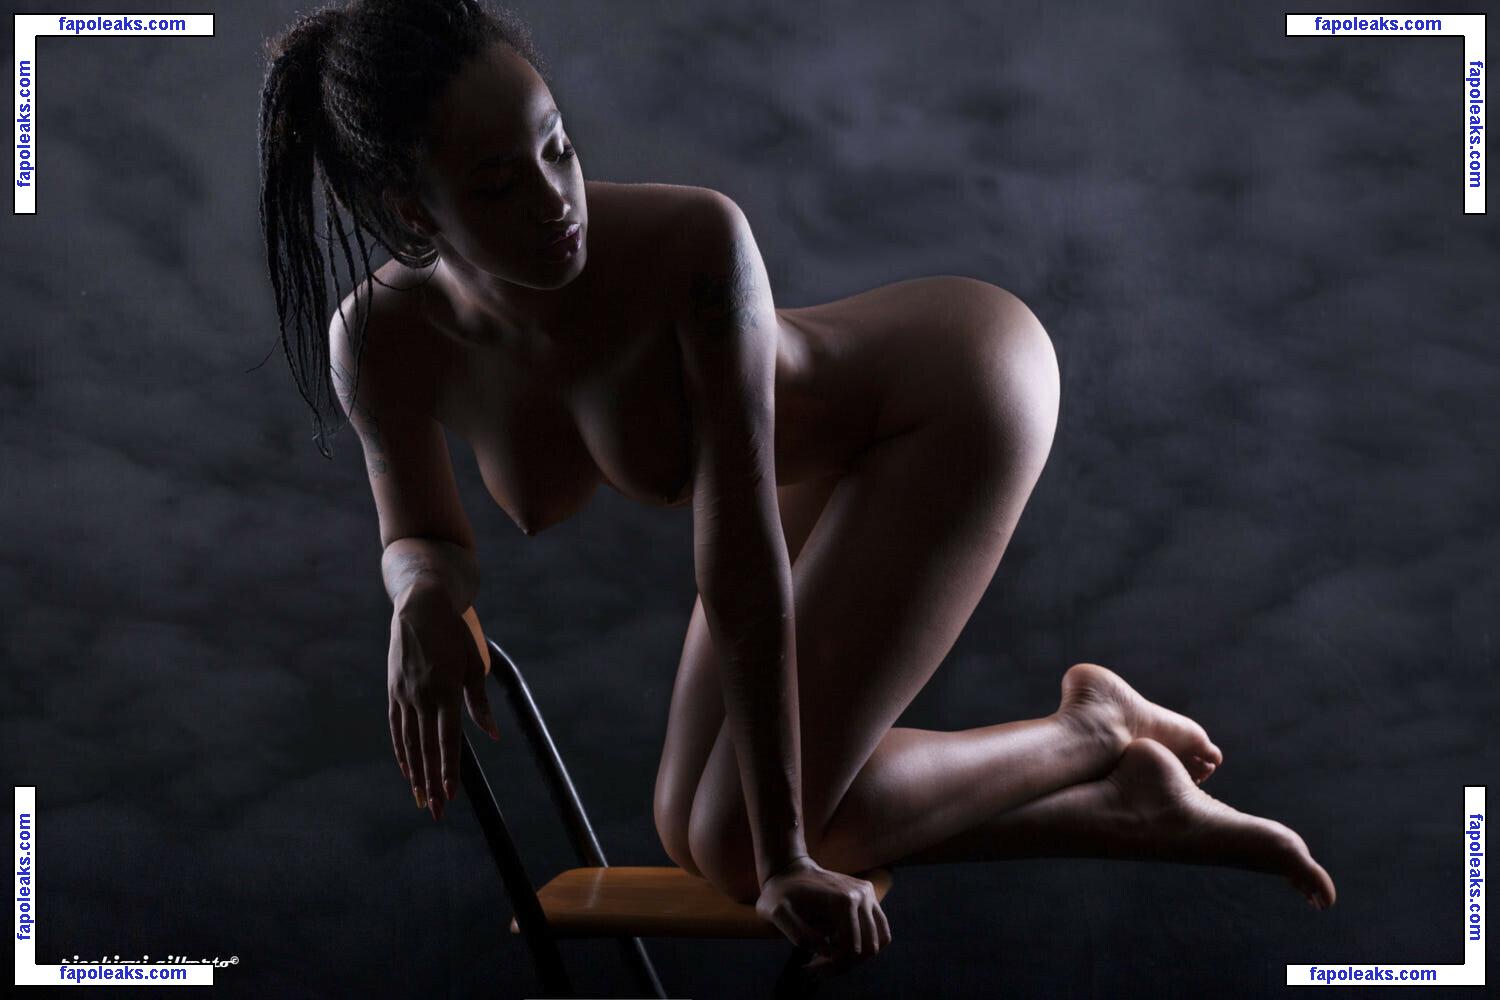 Rikae Crisi / Erika Vannucci / afro.khaleesi / ka.leesi nude photo #0020 from OnlyFans